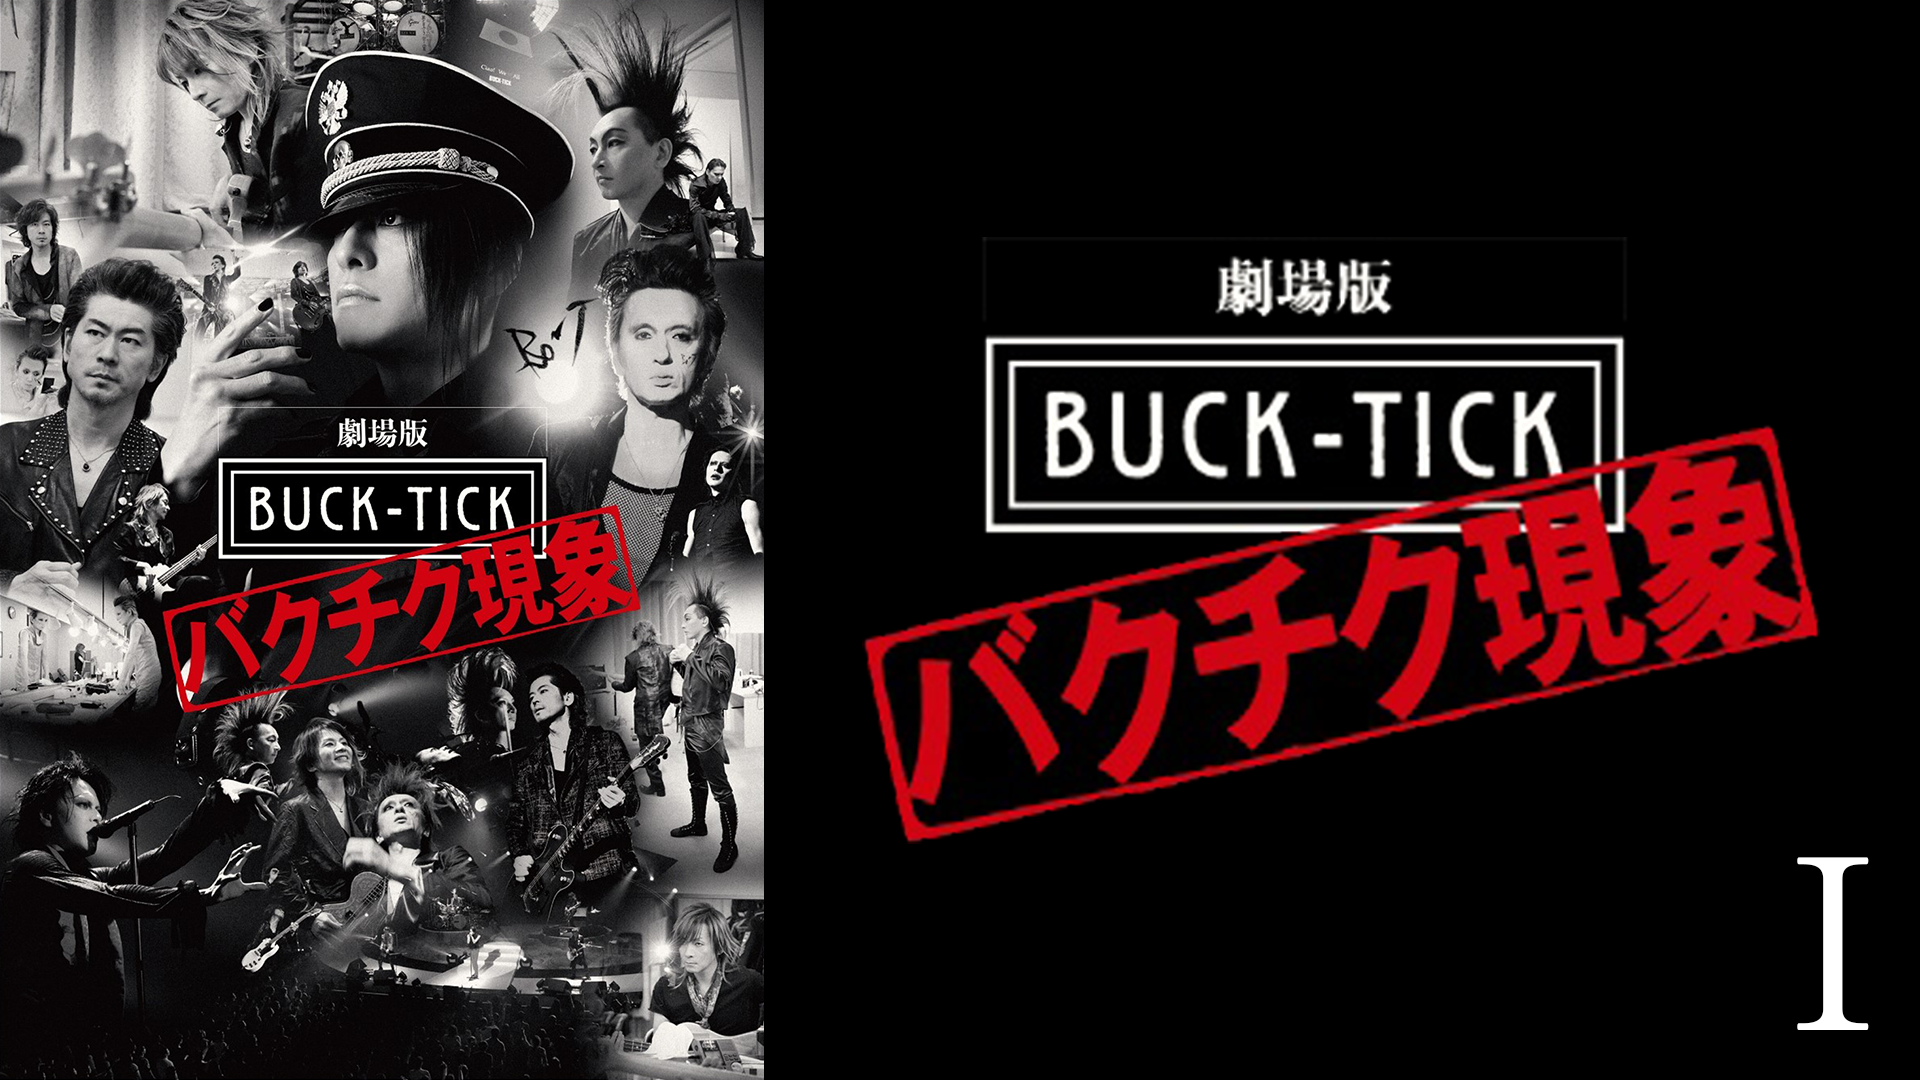 劇場版 BUCK-TICK〜バクチク現象〜Ⅰ(邦画 / 2013) - 動画配信 | U 